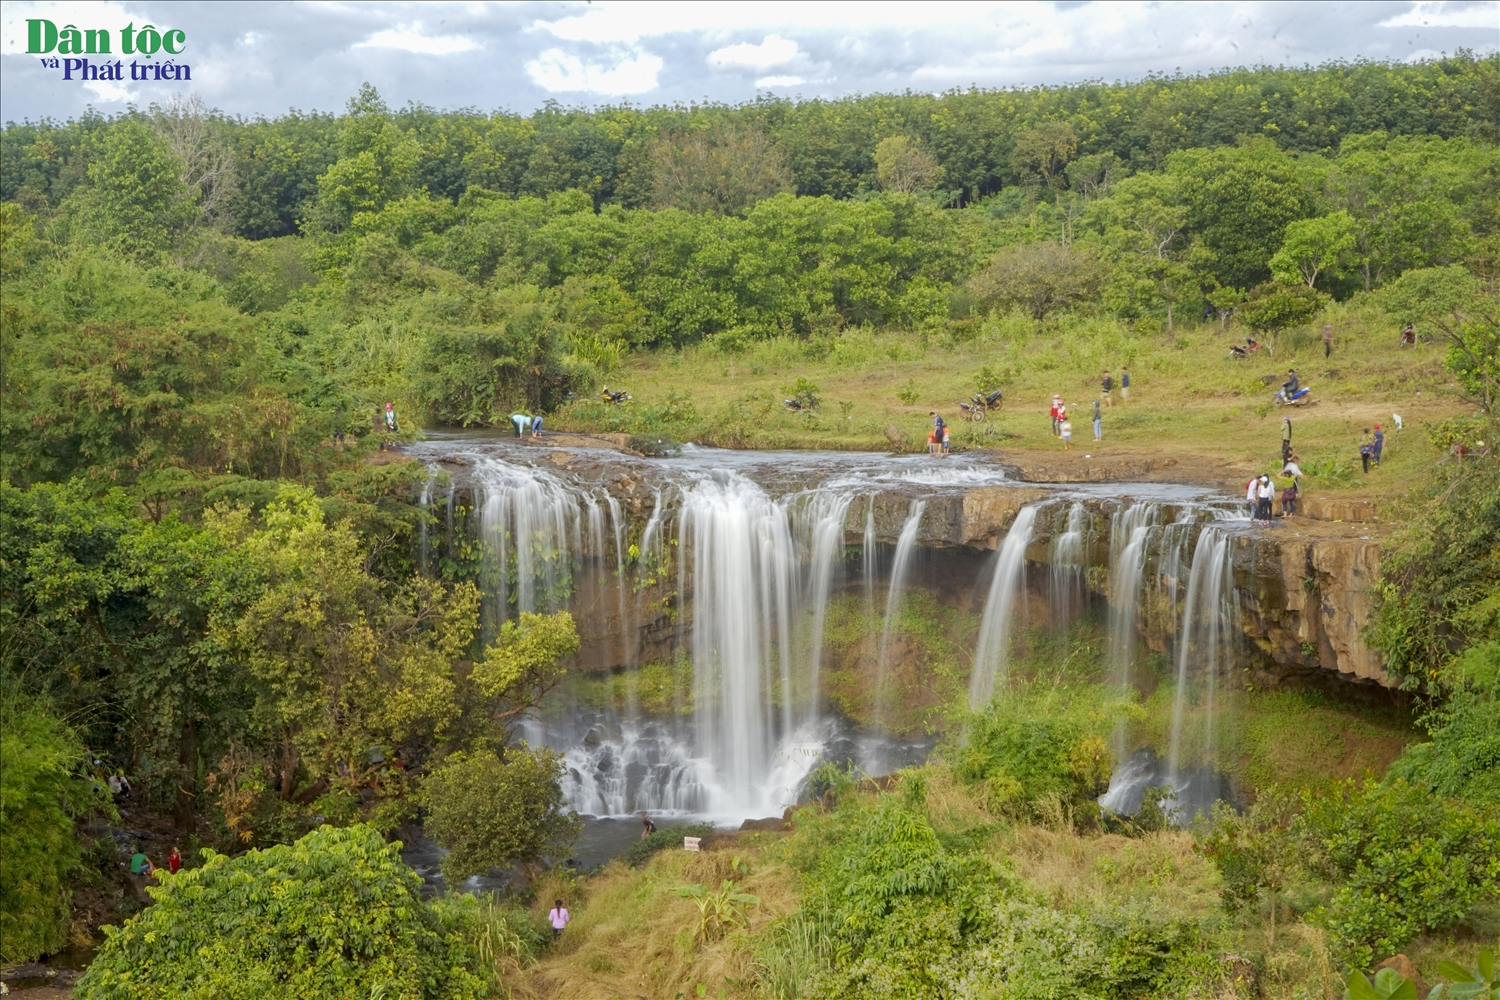 Nhiều du khách đã tìm đến thác Mơ để được ngắm nhìn tuyệt tác của thiên nhiên